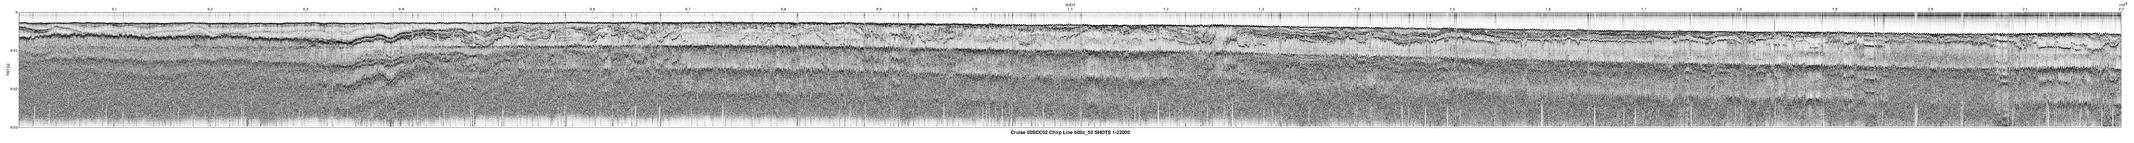 00SCC02 b00c_50 seismic profile image